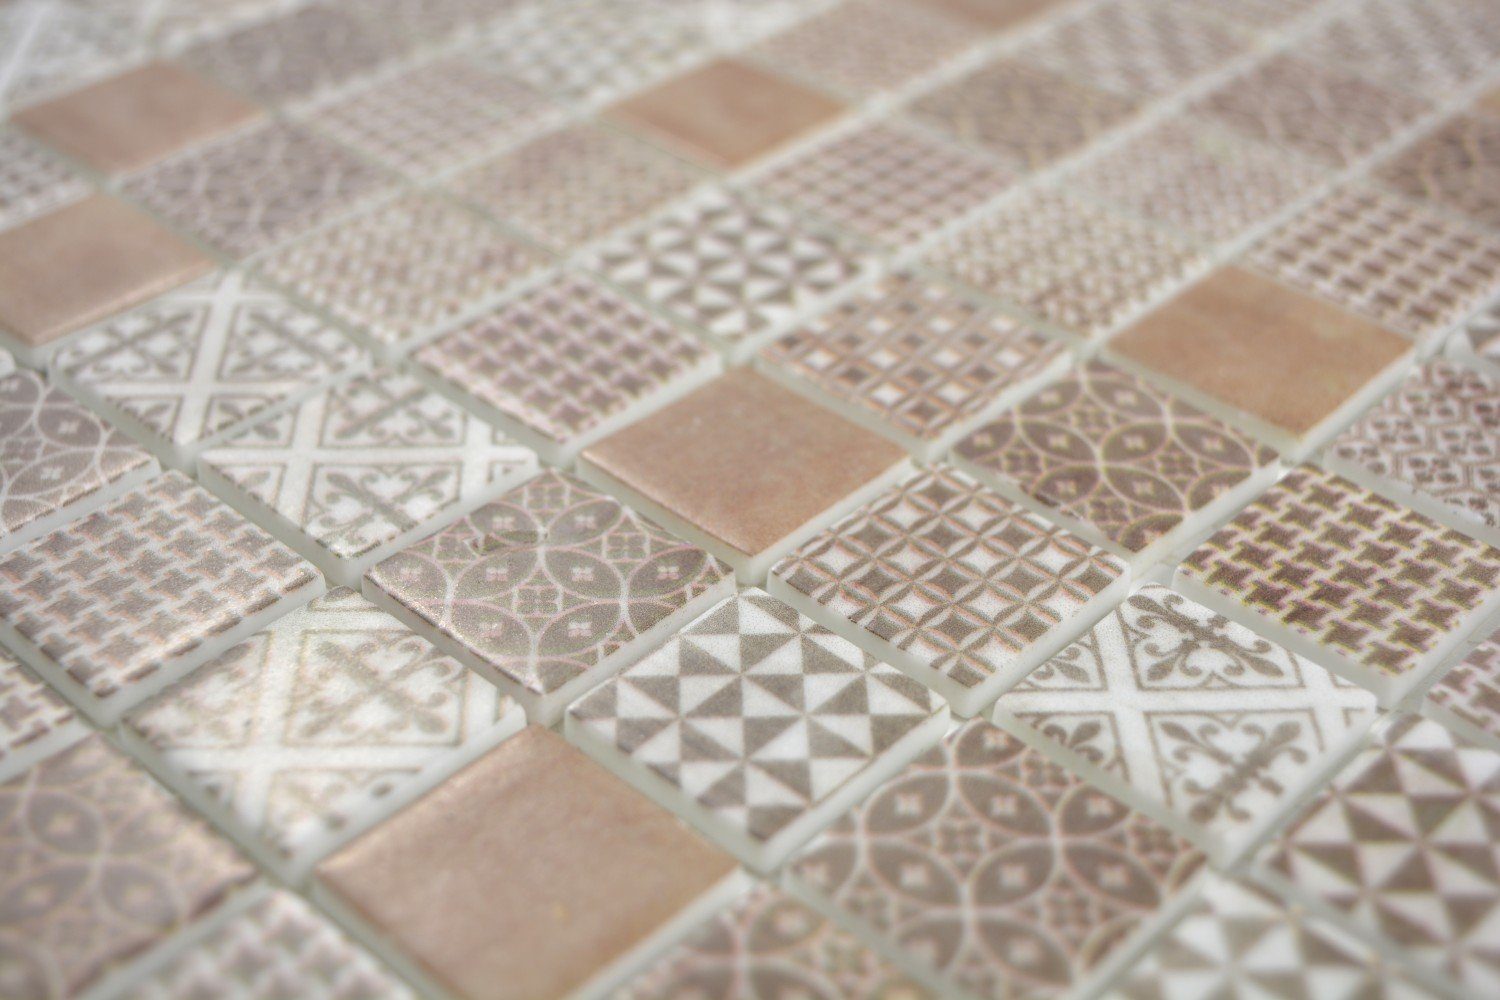 Mosani Mosaikfliesen Recycling Glasmosaik Mosaikfliesen Mosaikmatten matt / 10 braun